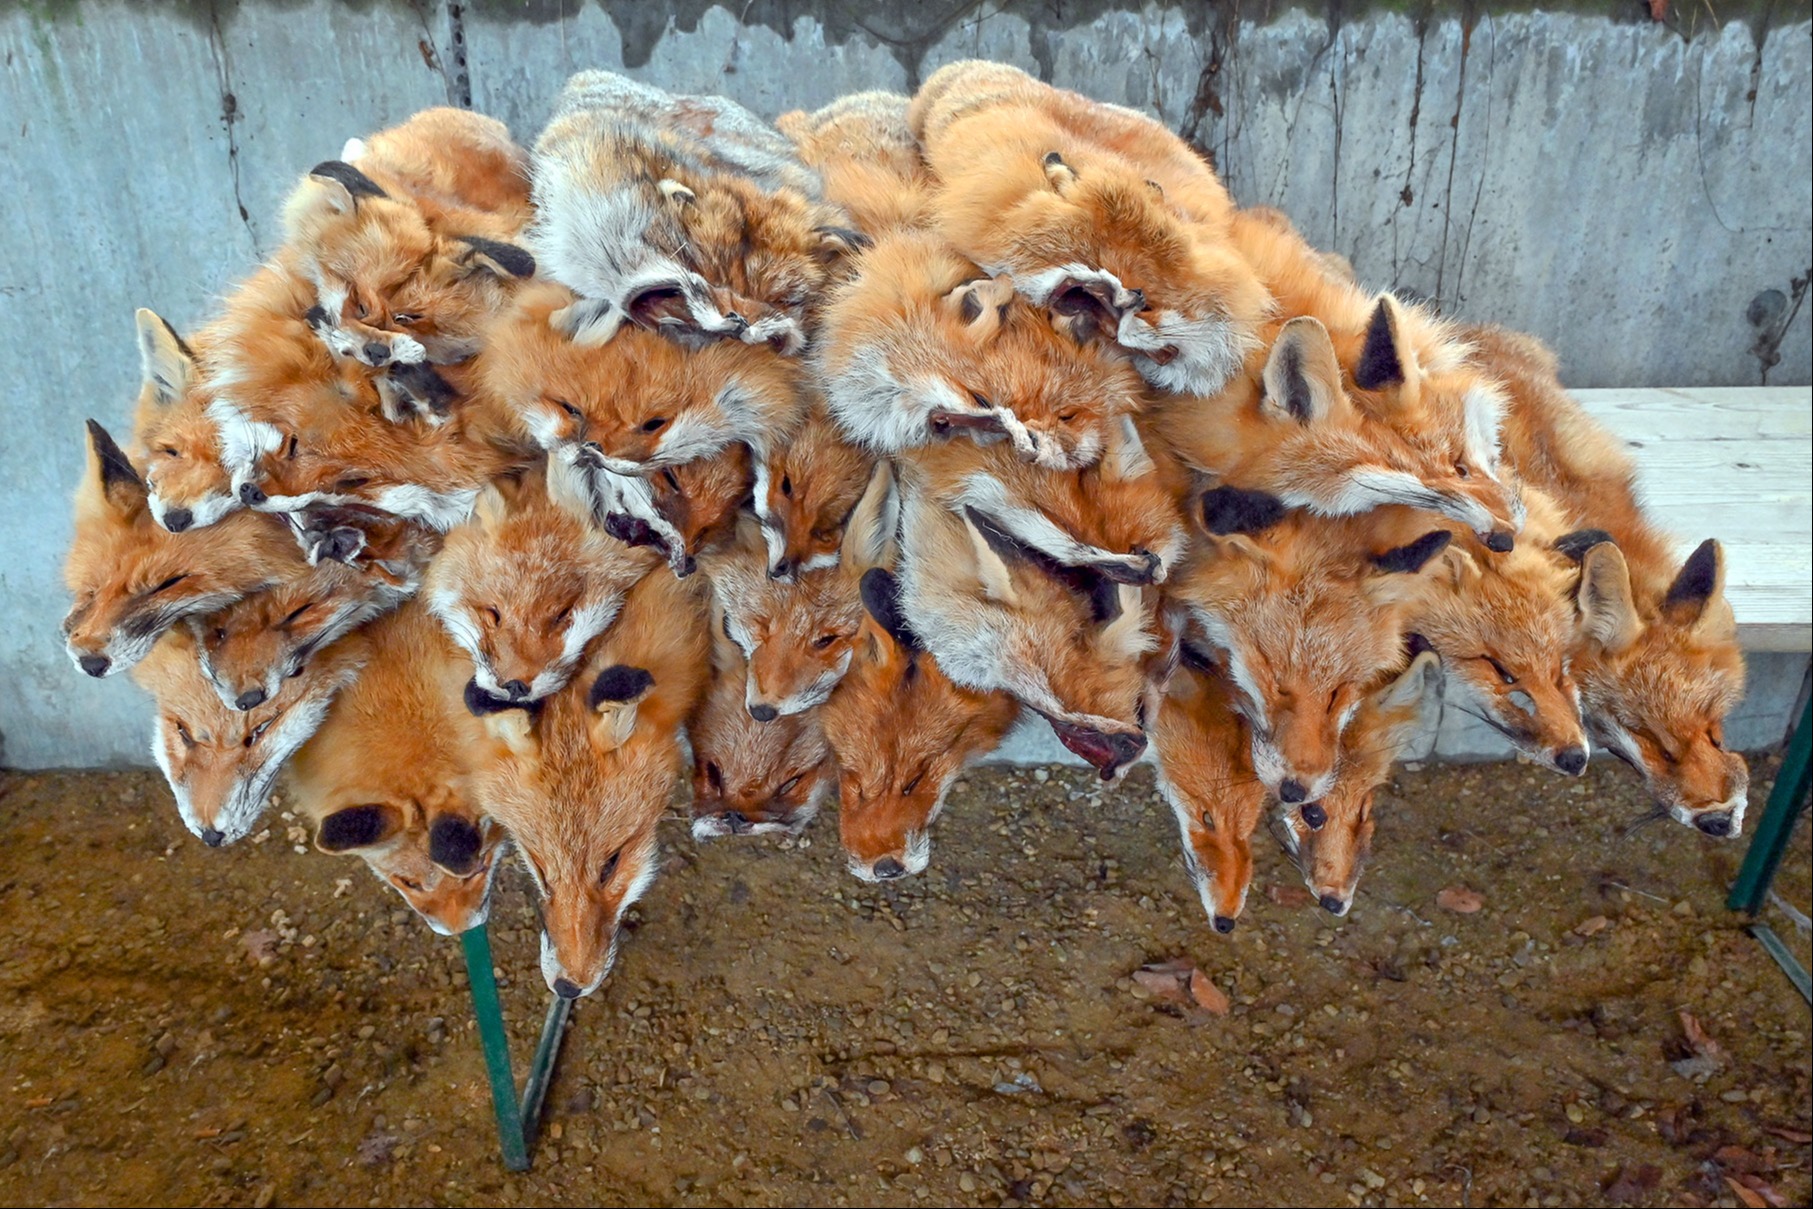 Fuchs-, Dachs- und Marderfelle – fast zum Nulltarif zu haben